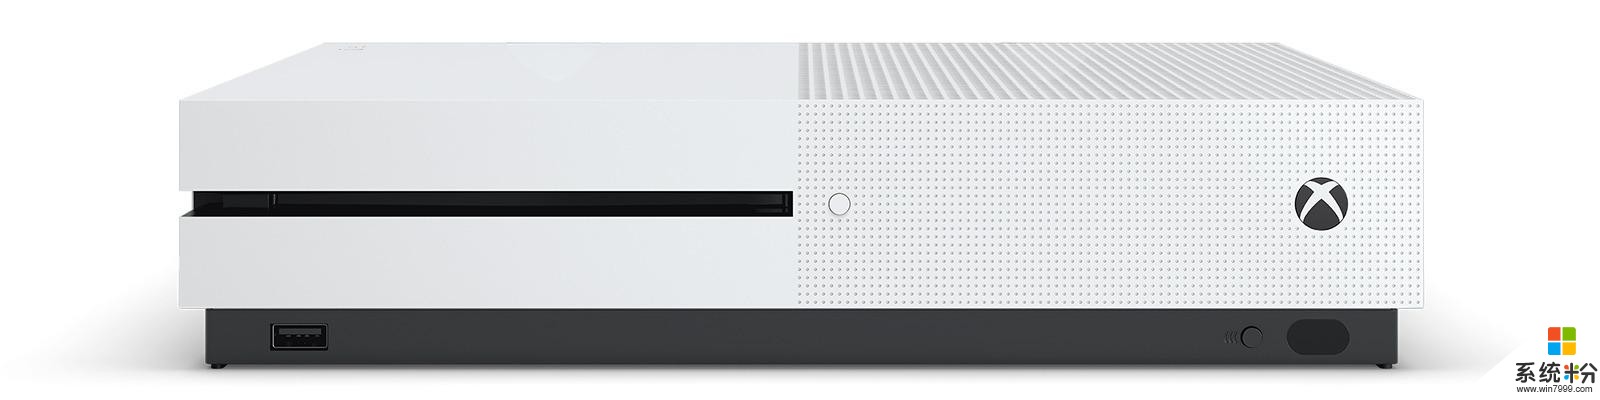 微软公布最新财报 Xbox收入小幅上涨(1)